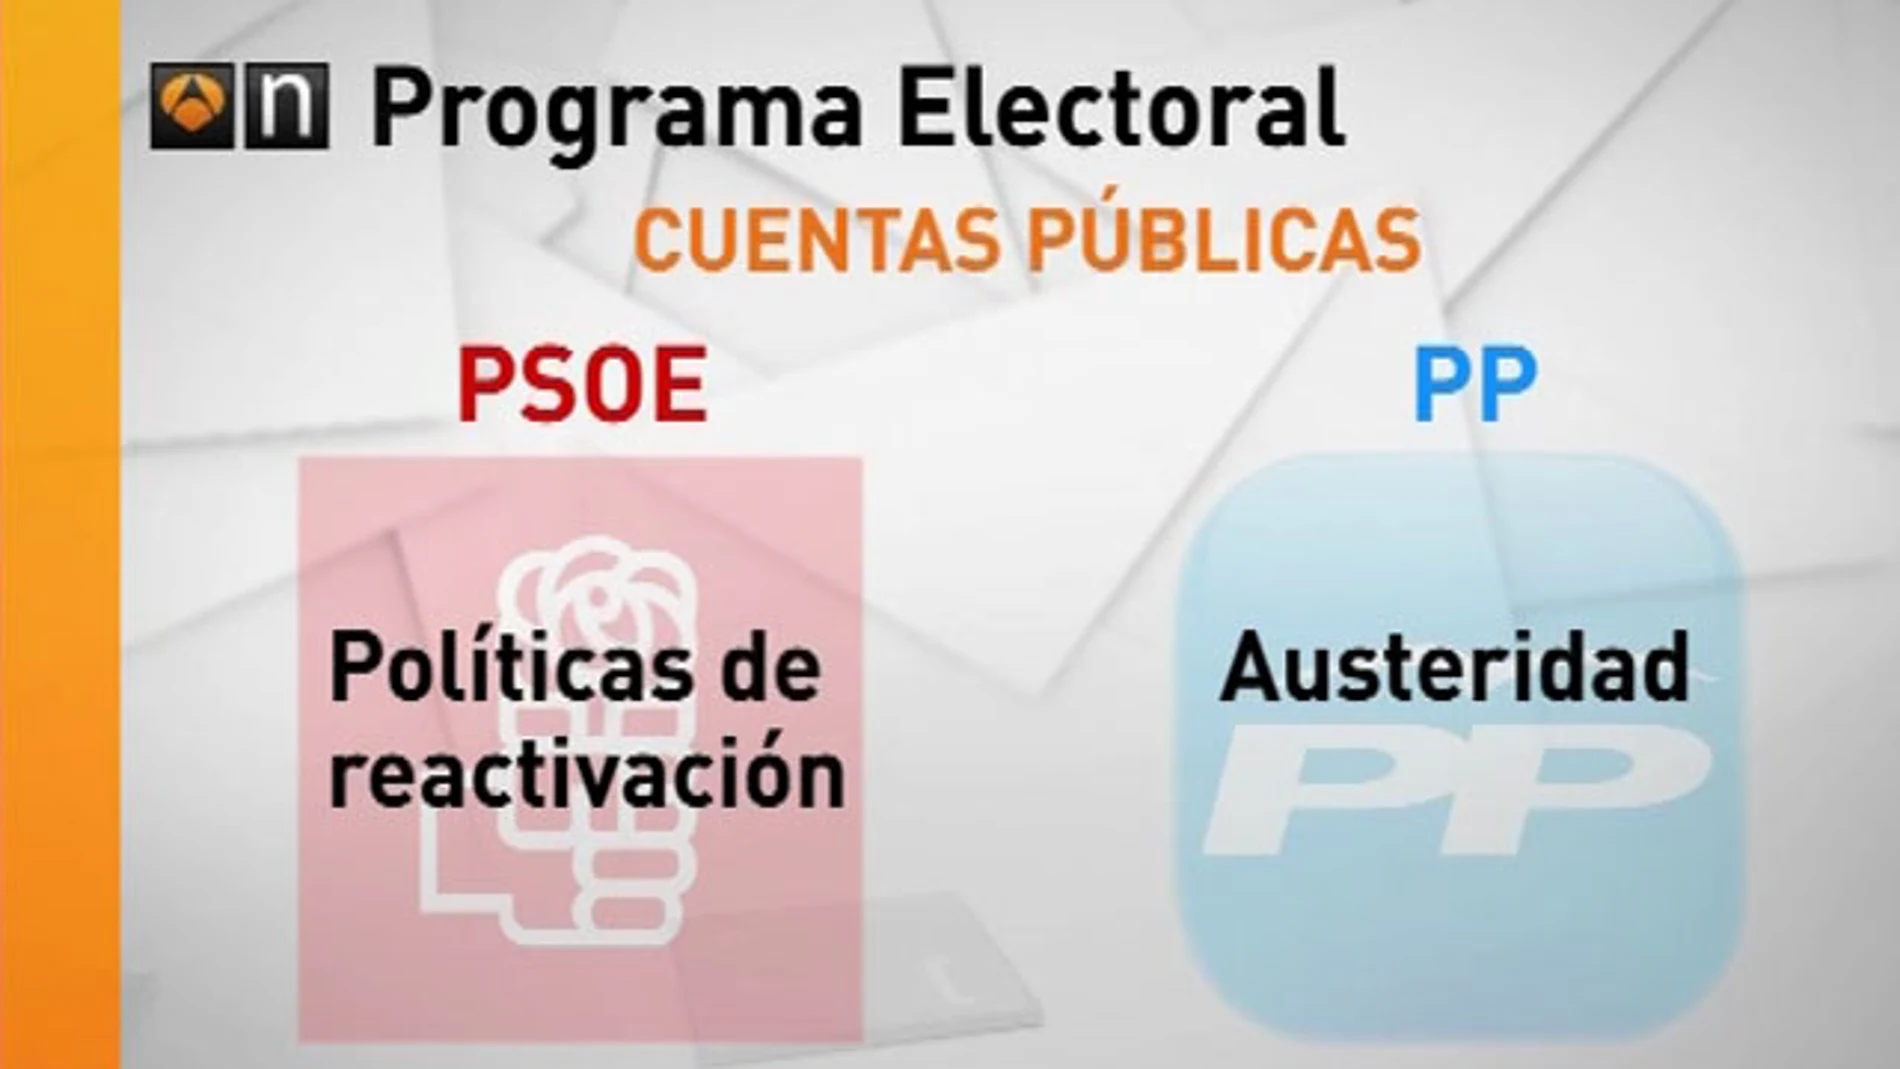 Programas electorales de PP y PSOE